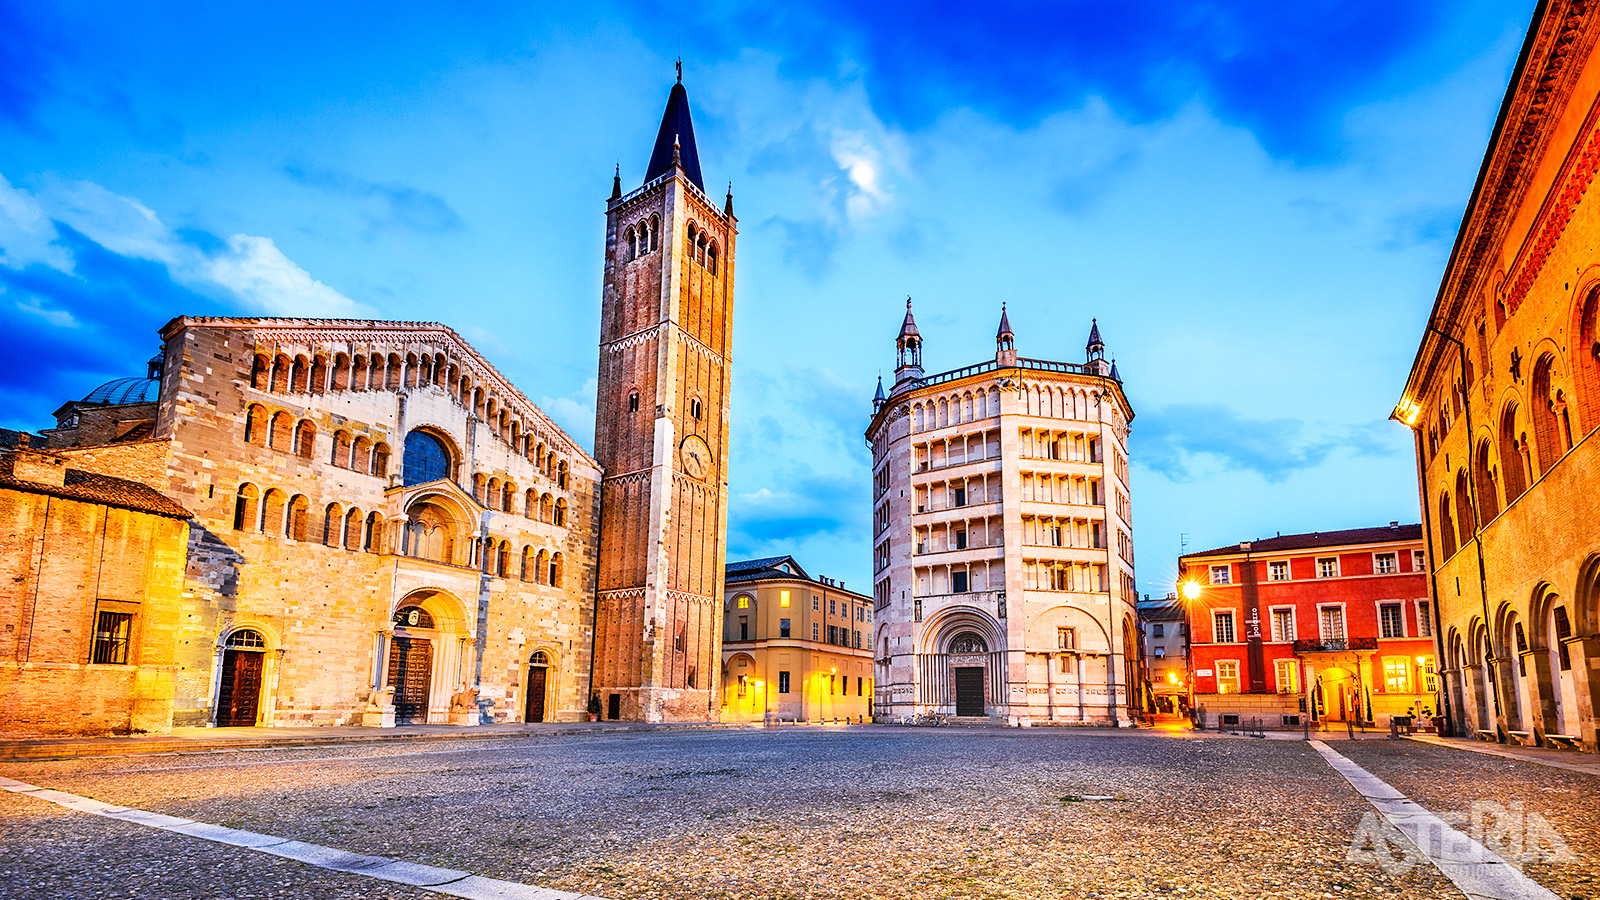 Parma, symbool van lekker eten heeft een schat aan mooie gebouwen, schilderijen en beeldhouwkunst